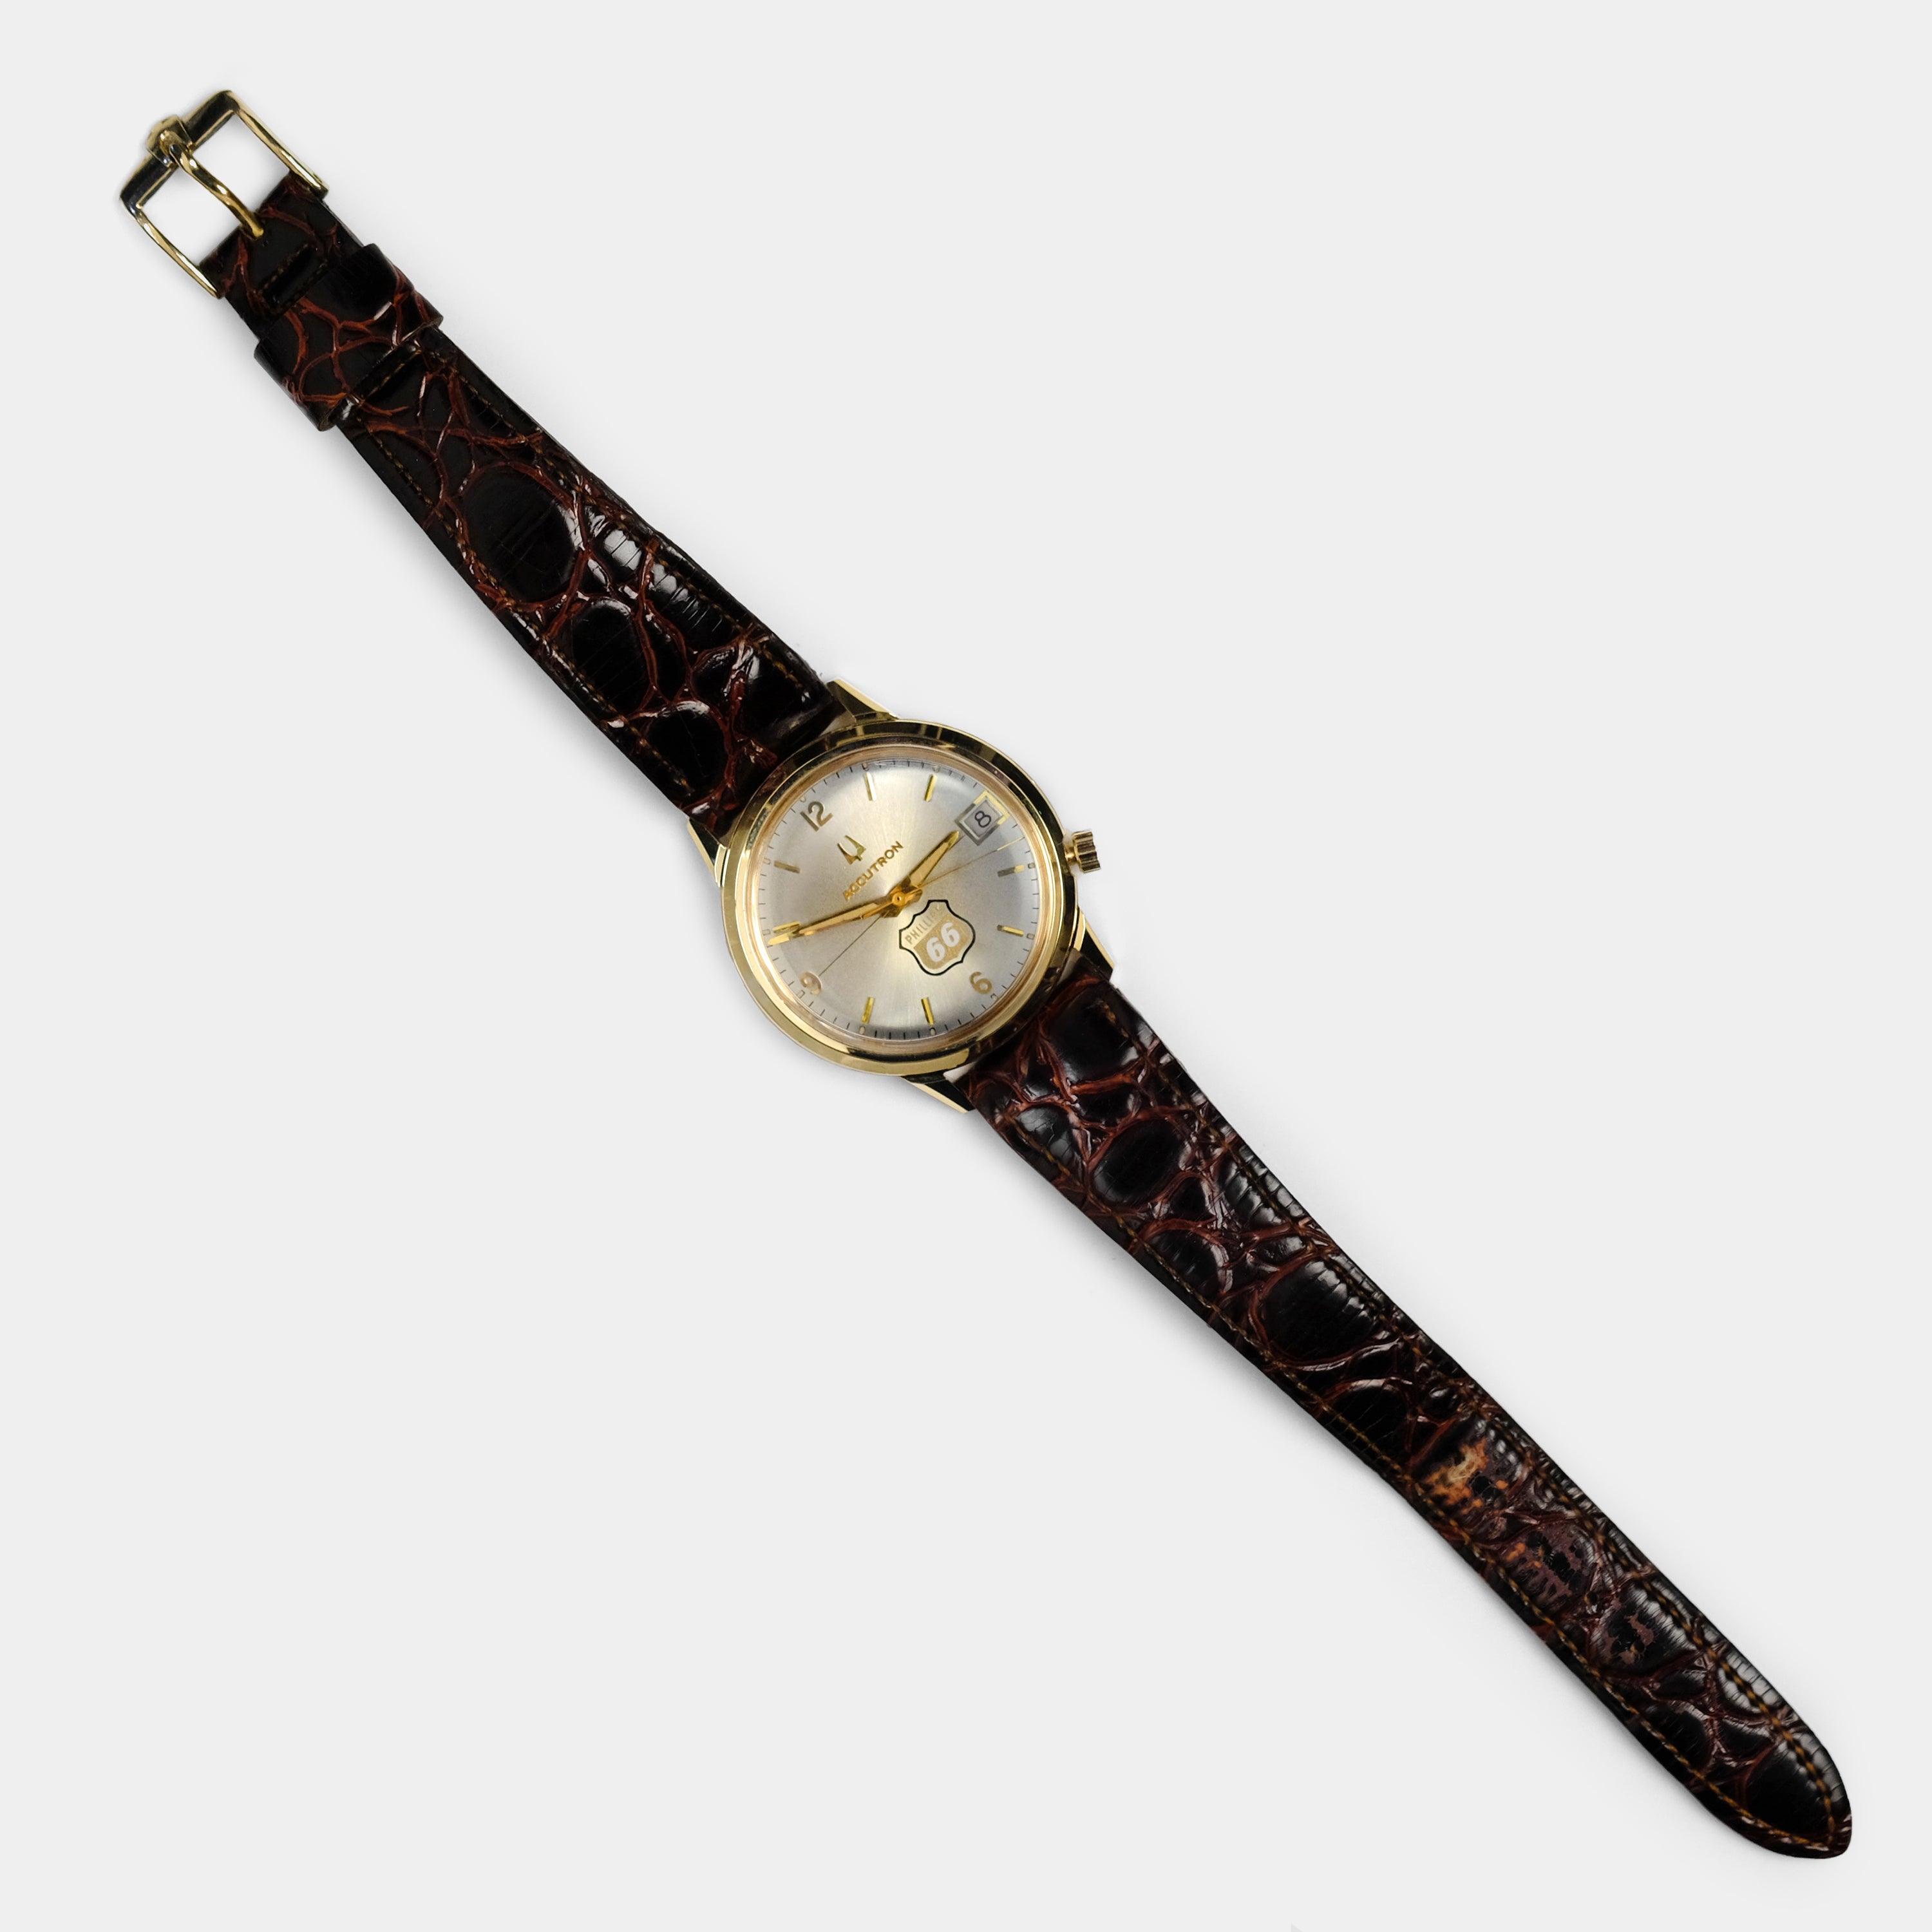 Accutron Calendar "Phillips 66" Award Circa 1975 Wristwatch